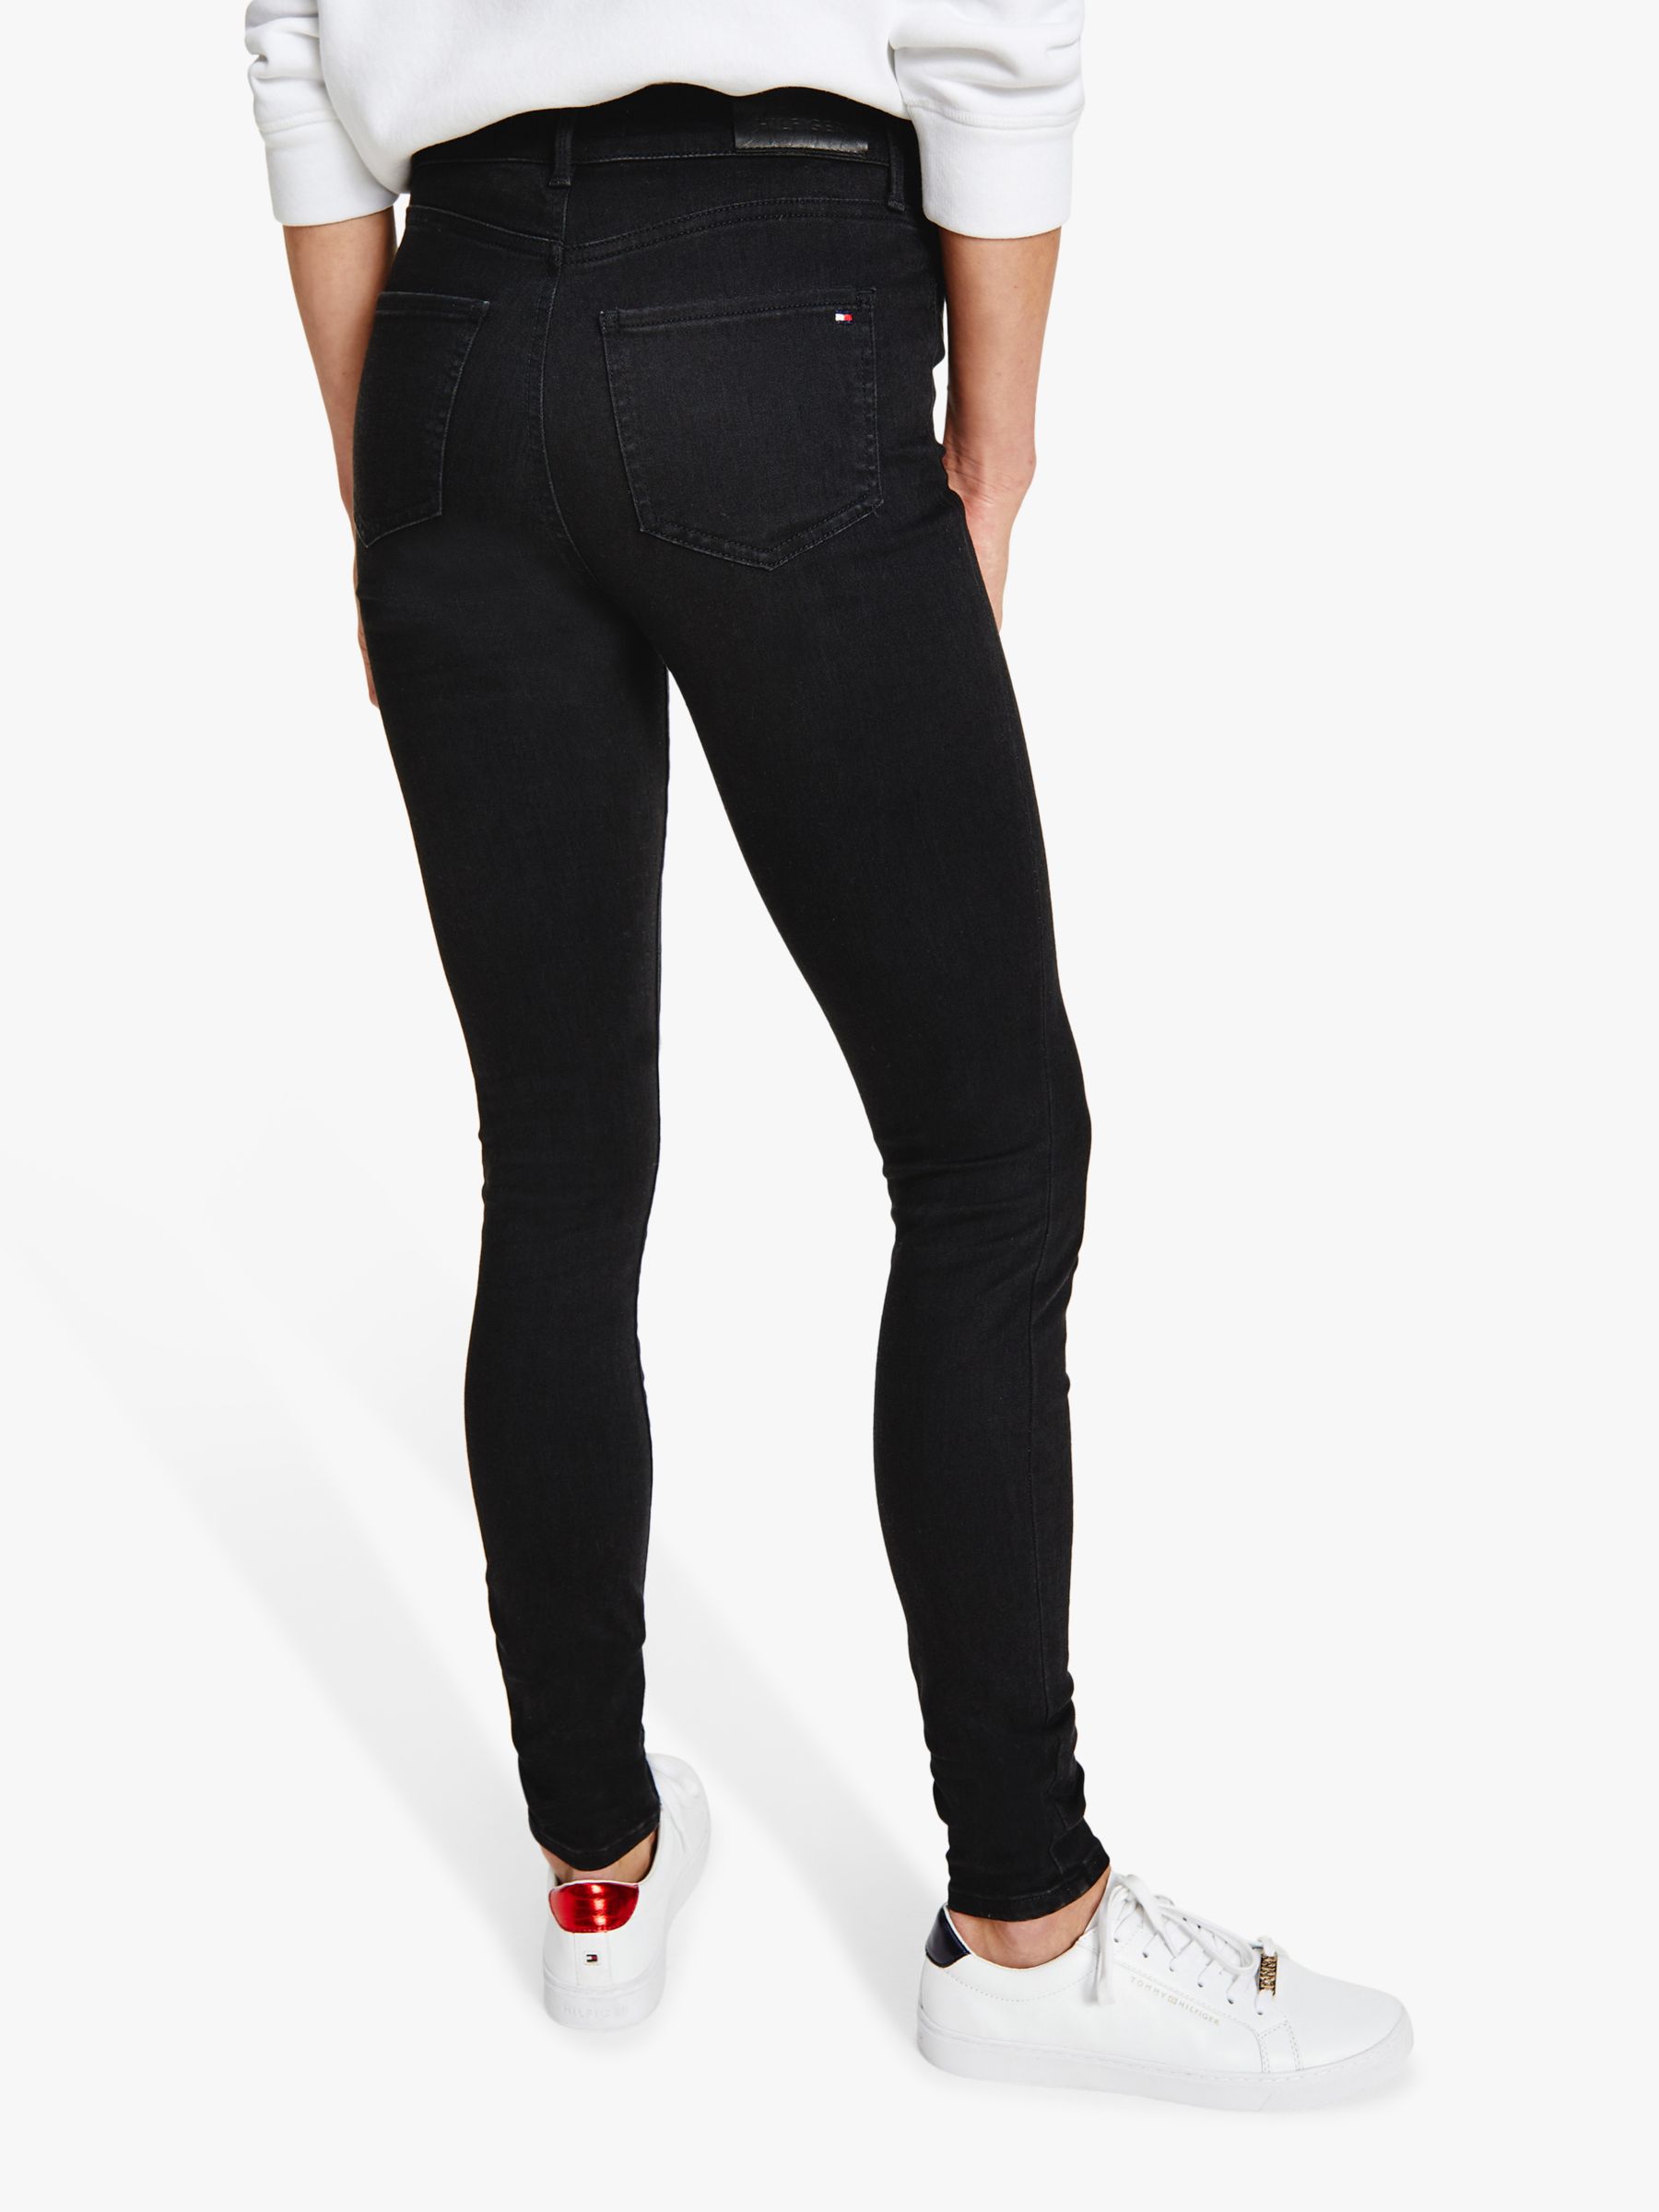 Tommy Hilfiger Harlem Skinny Jeans, Black, 25S